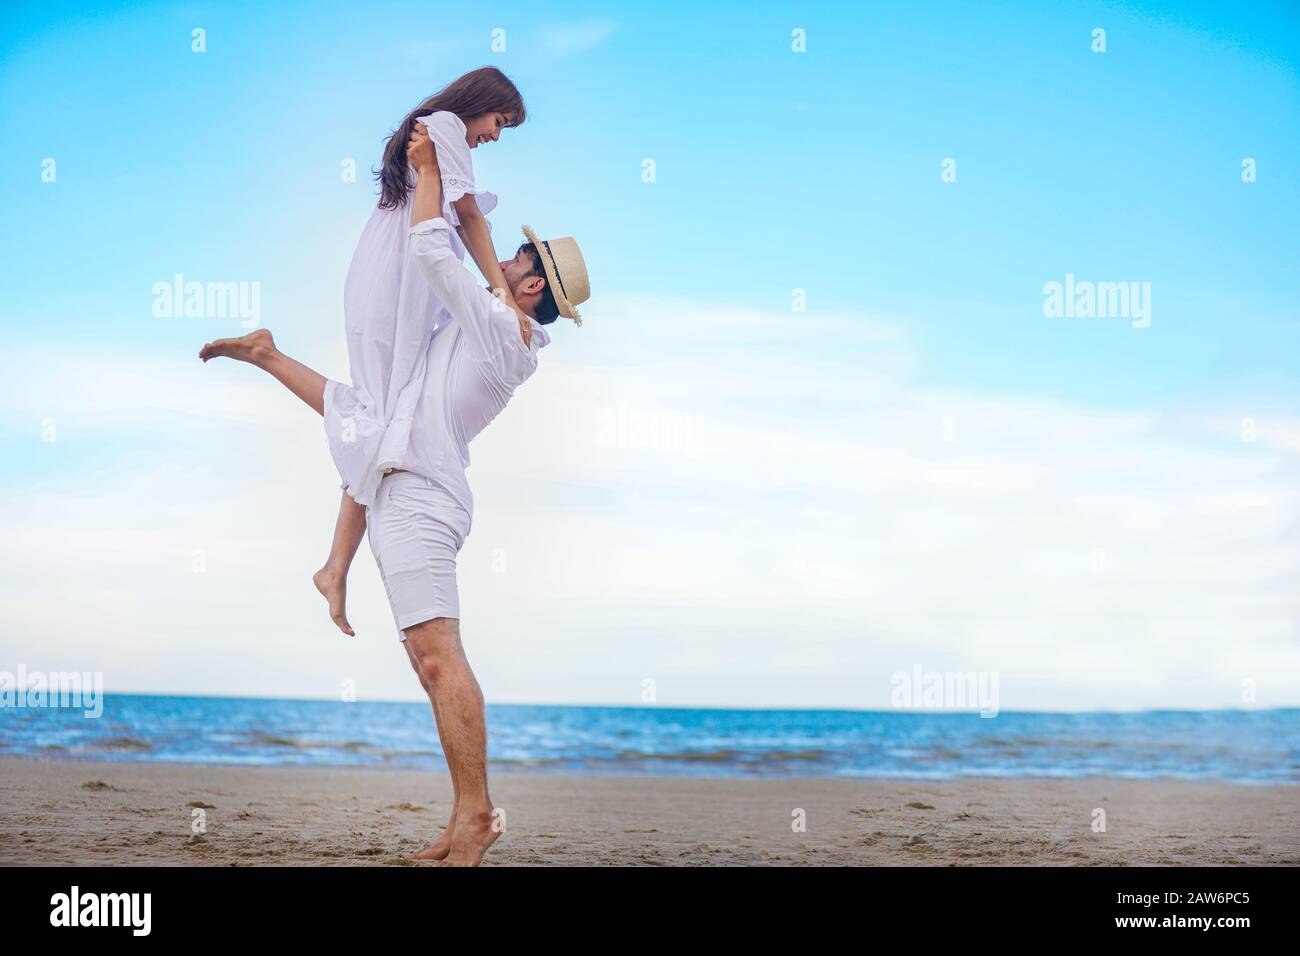 Gerne Romantische Paare Liebhaber Hande Halten Zusammen Zu Fuss Auf Den Strand Stockfotografie Alamy